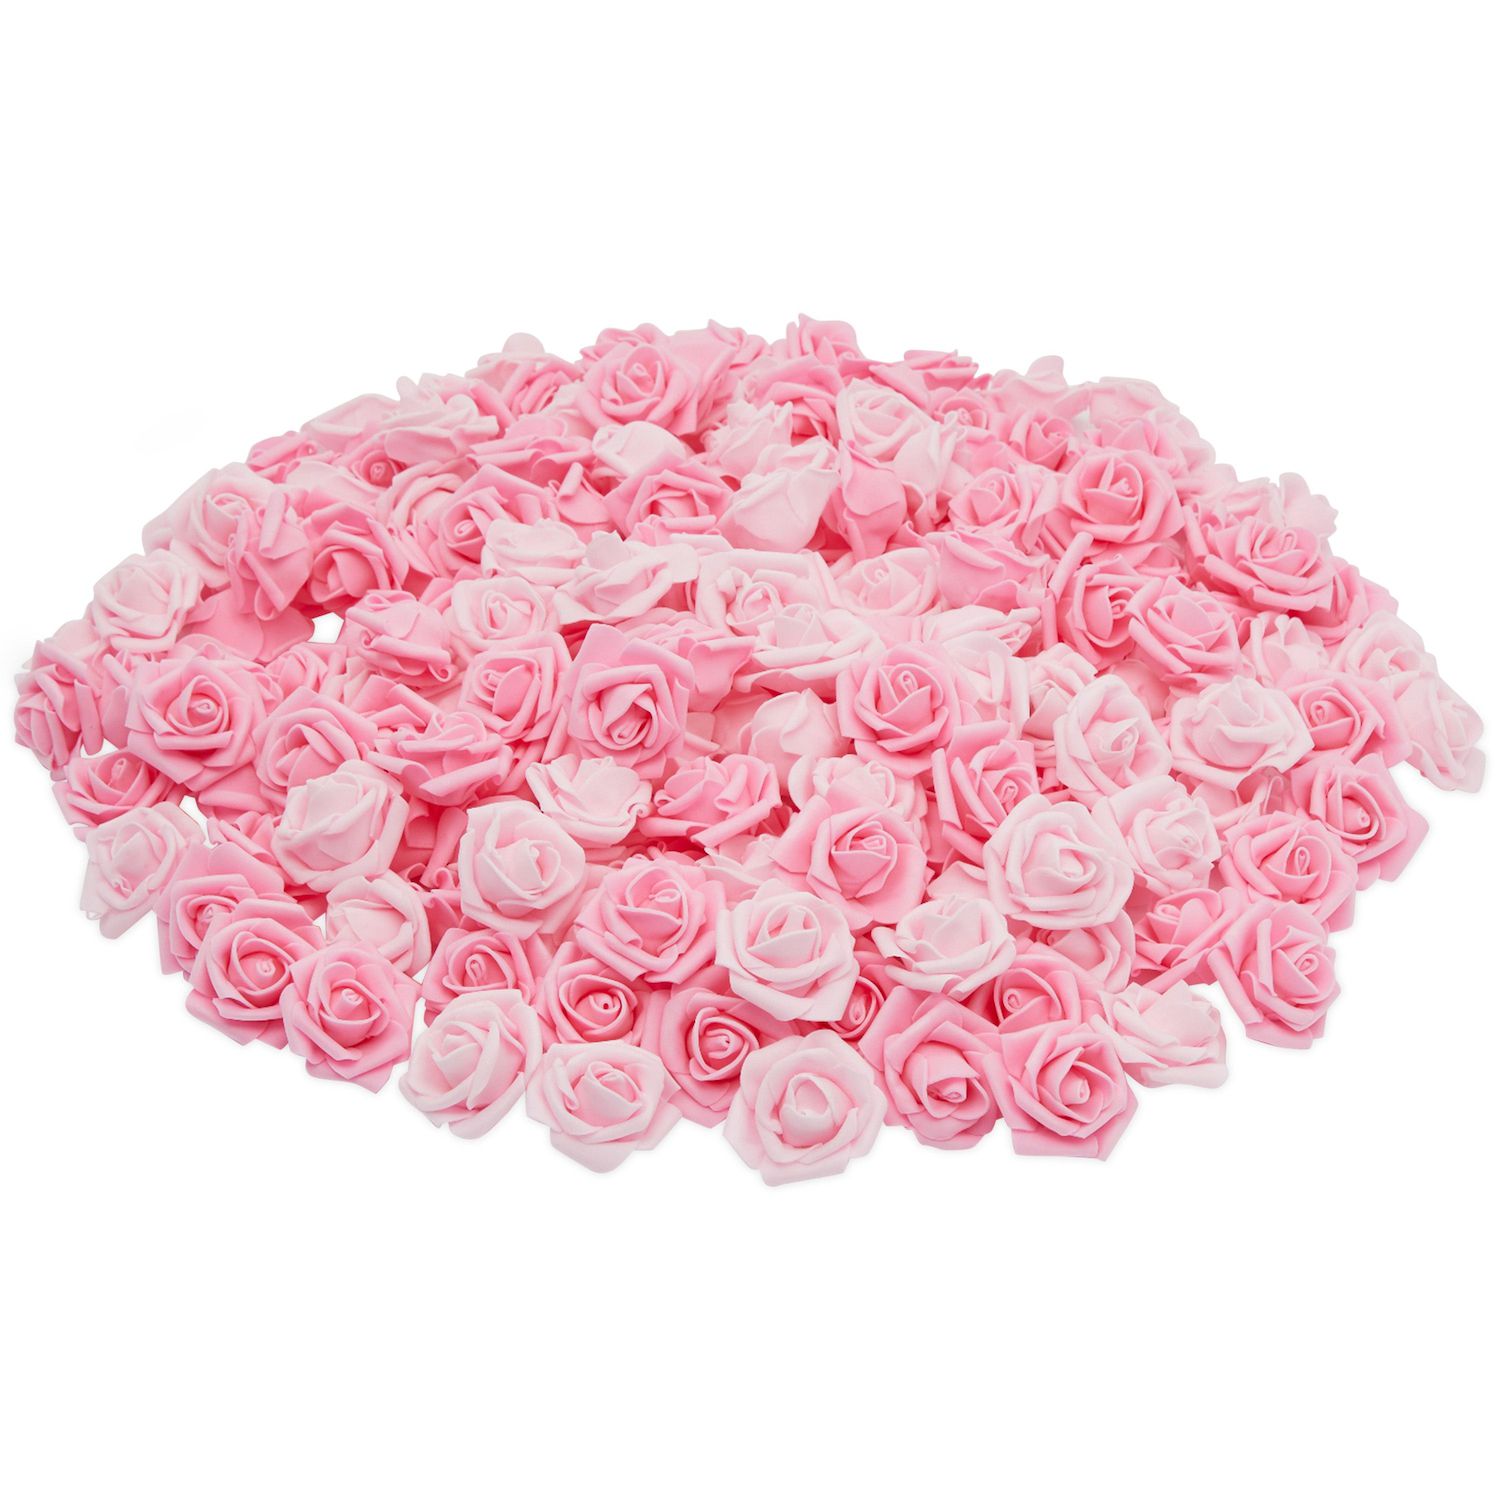 Rose Bouquet Supplies